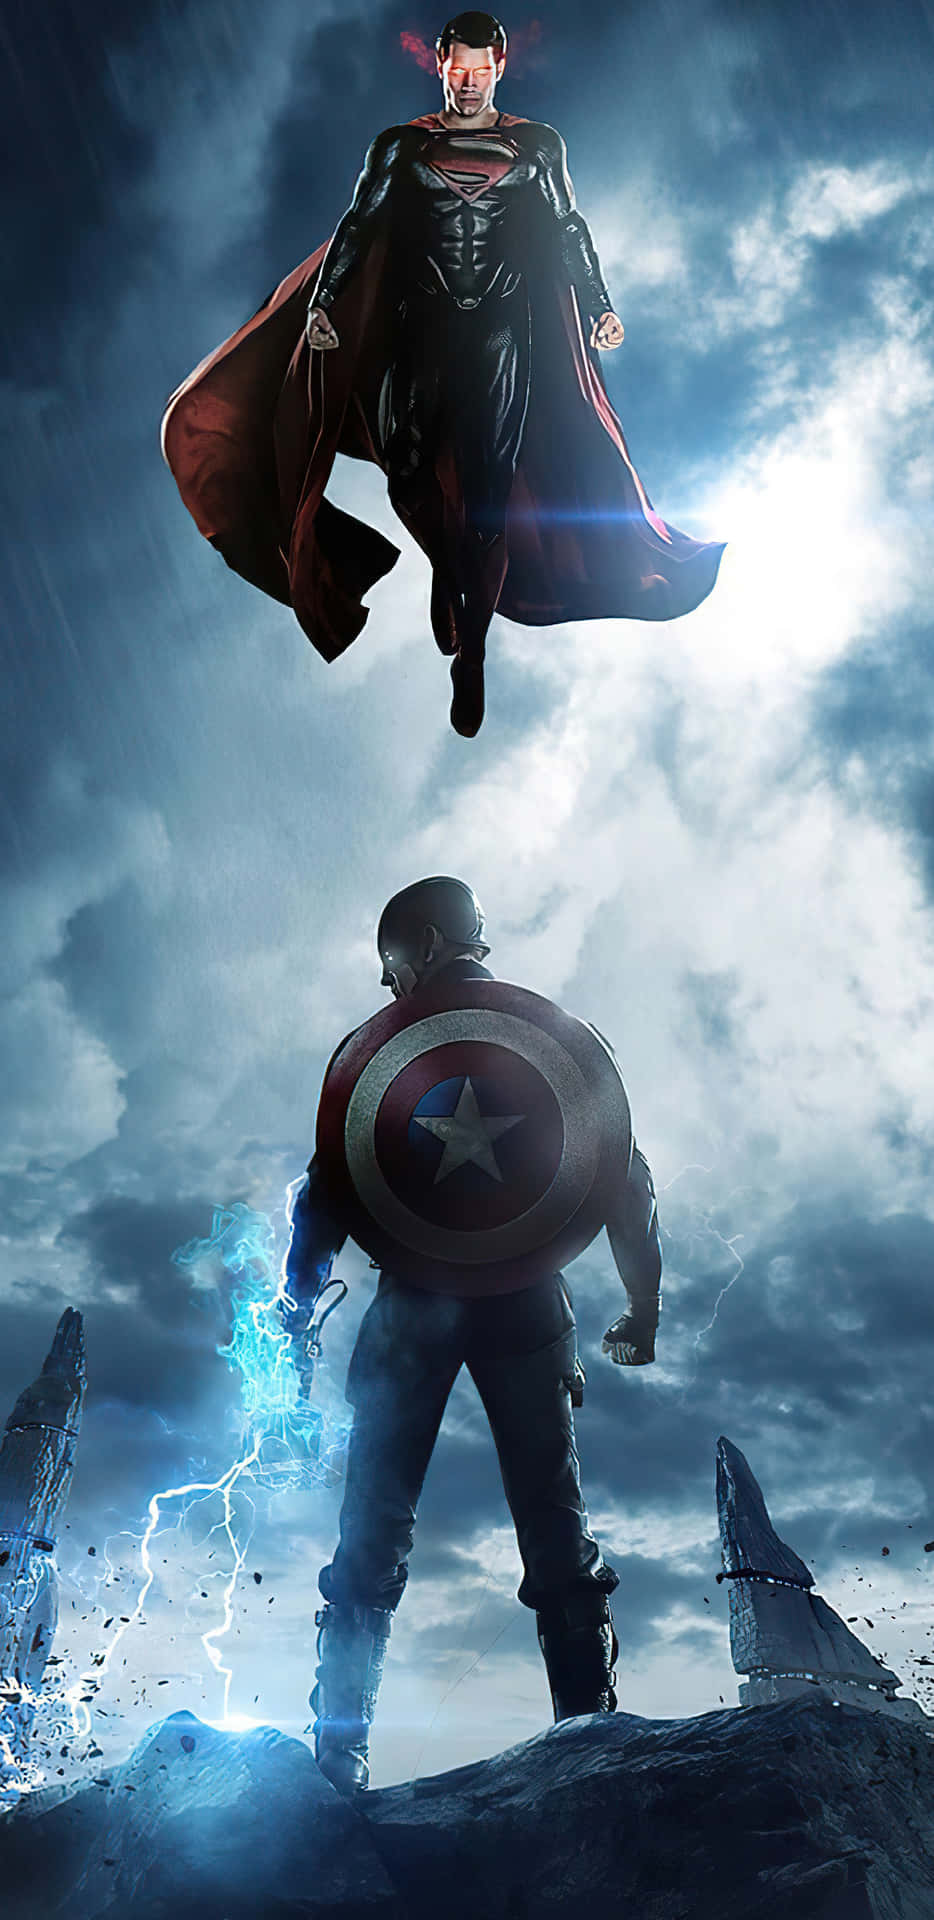 Pixel3xl Bakgrund Med Captain America Och Superman.